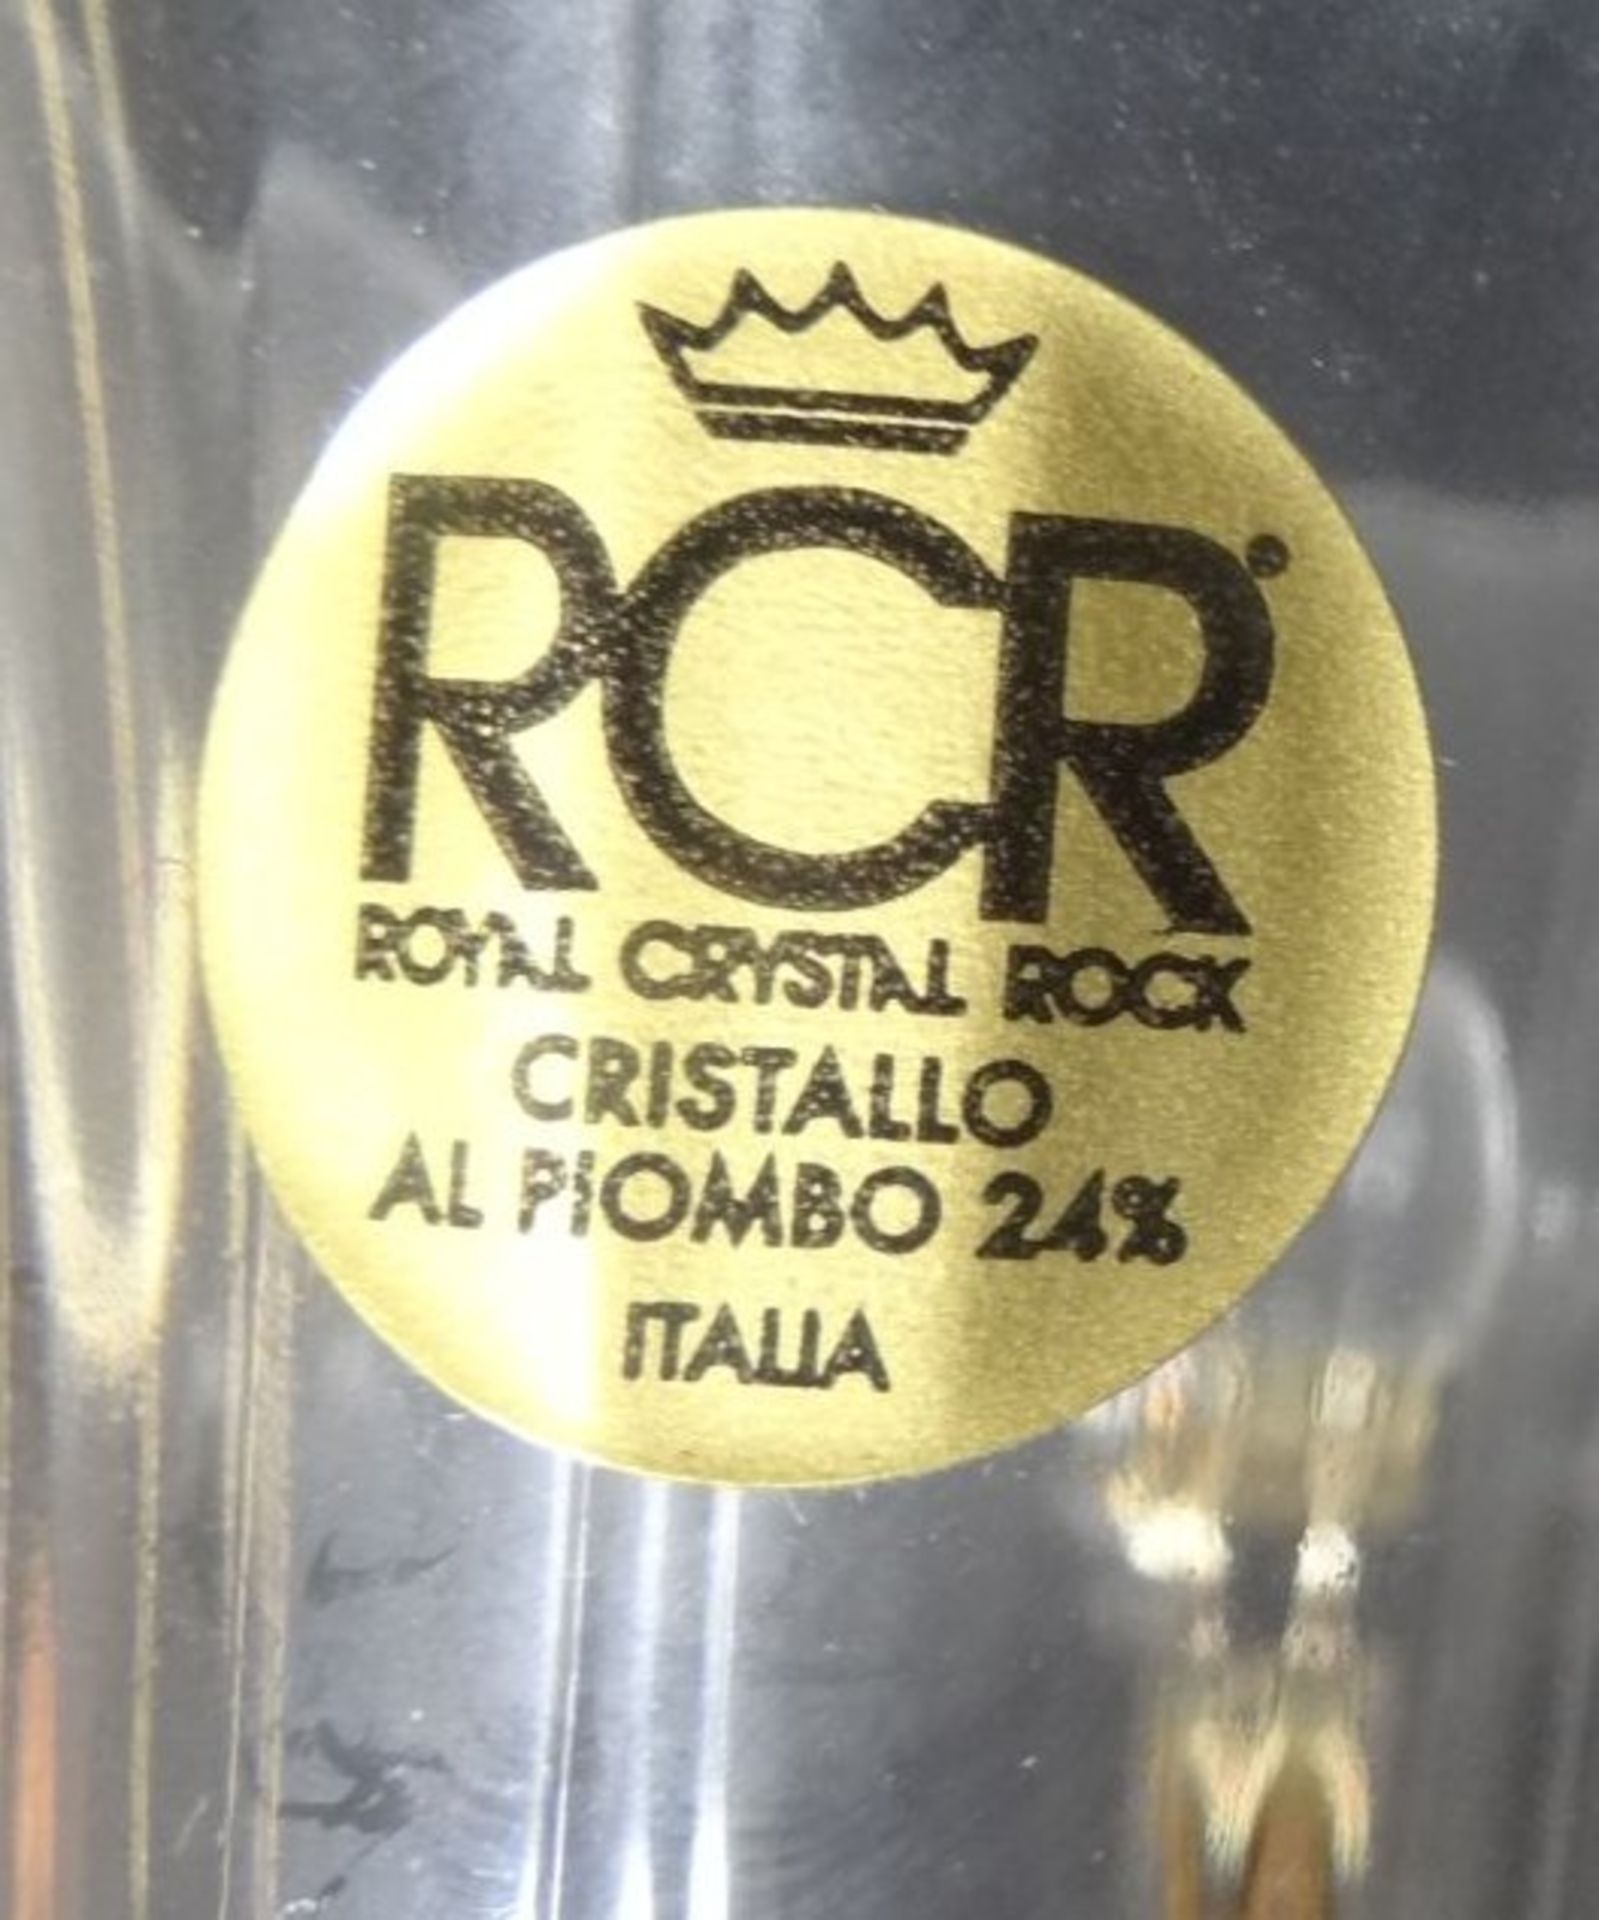 3x Kristall-Tischglocken mit versilb. Tieren als Handhaben "RCR" Italia, H-13 cm- - -22.61 % buyer's - Bild 6 aus 6